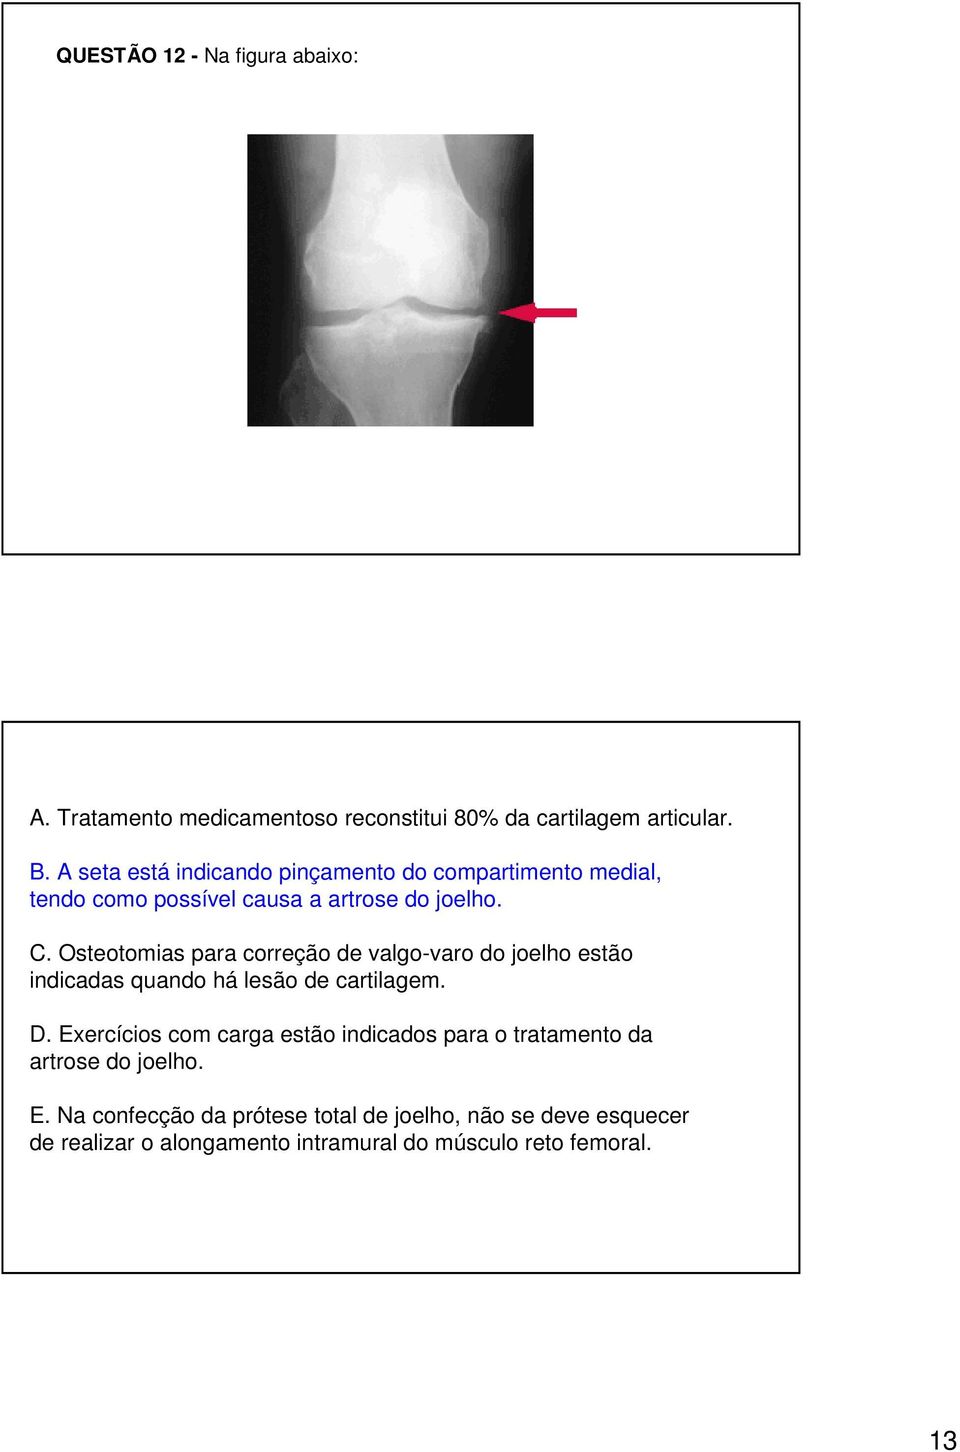 Osteotomias para correção de valgo-varo do joelho estão indicadas quando há lesão de cartilagem. D.